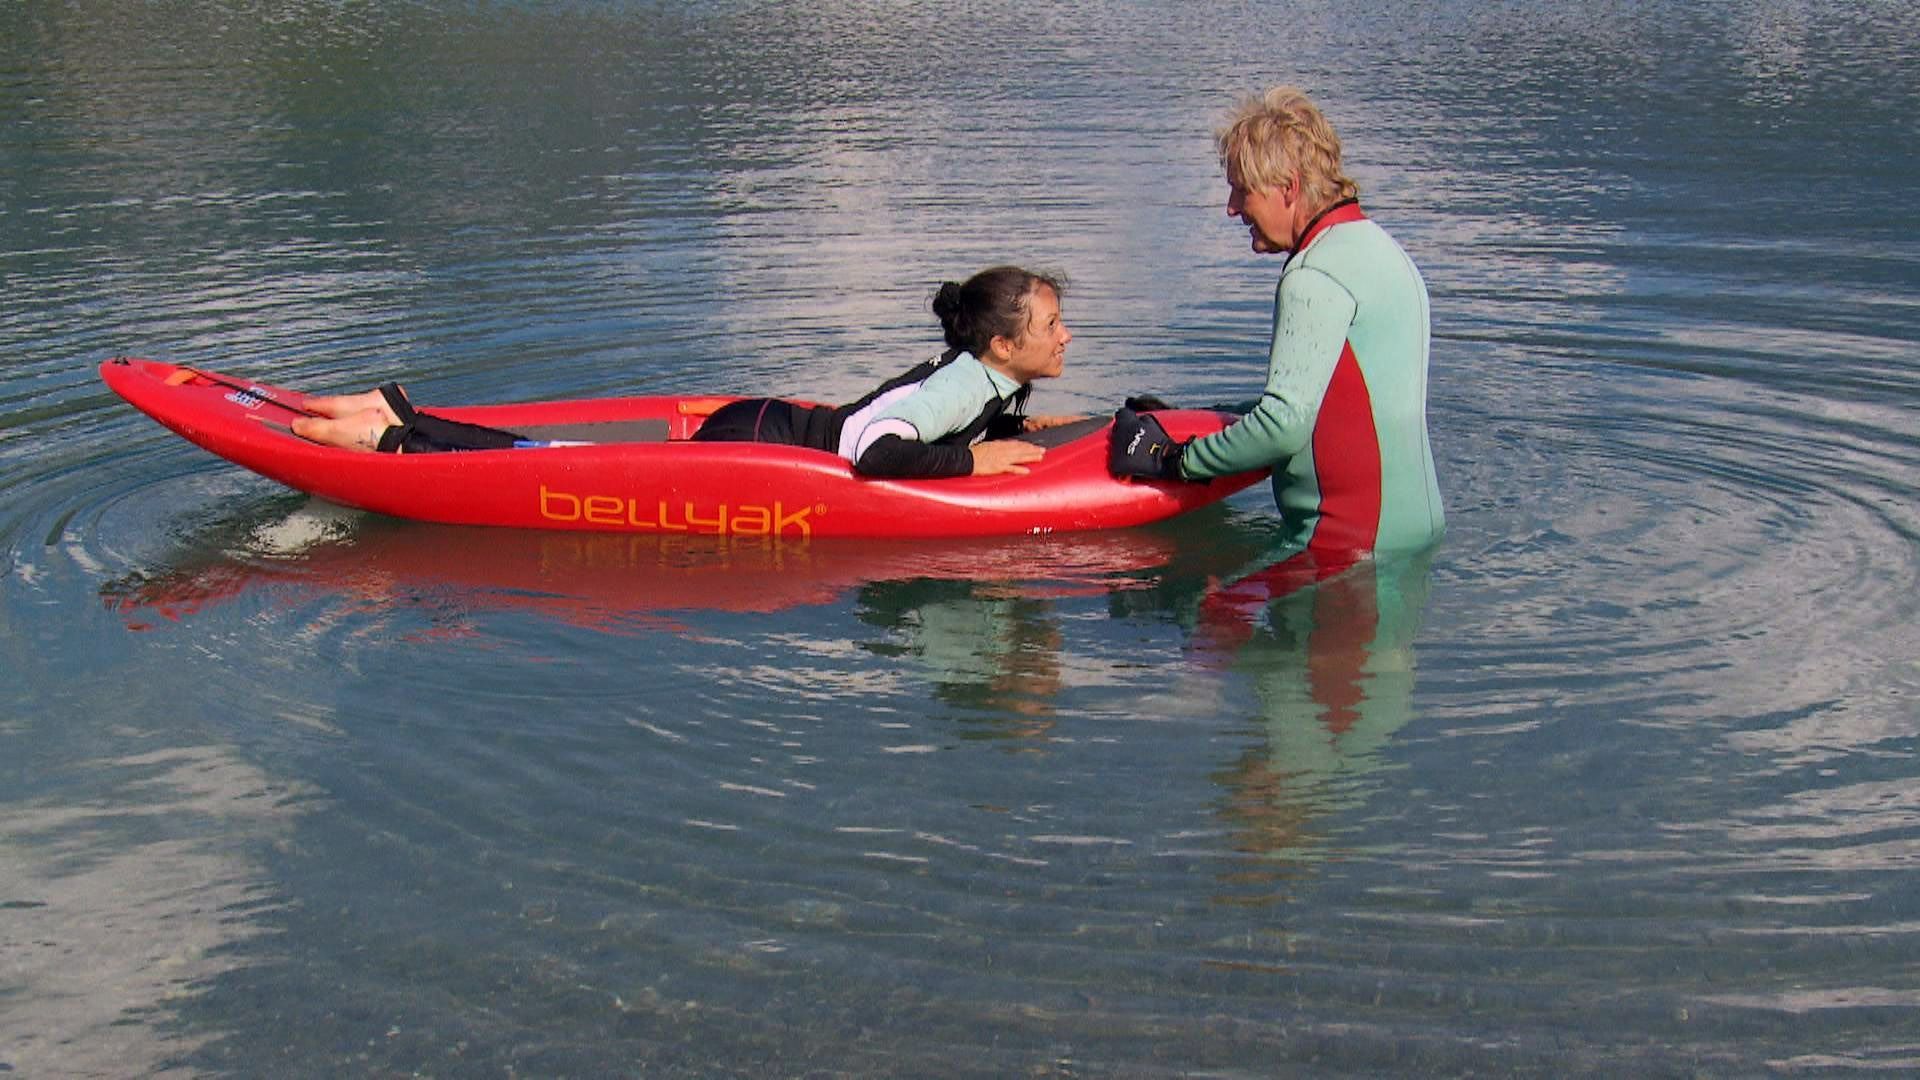 Extrait du documentaire "Jeunes et paraplégiques". Silke et son compagnon nagent dans une rivière. 